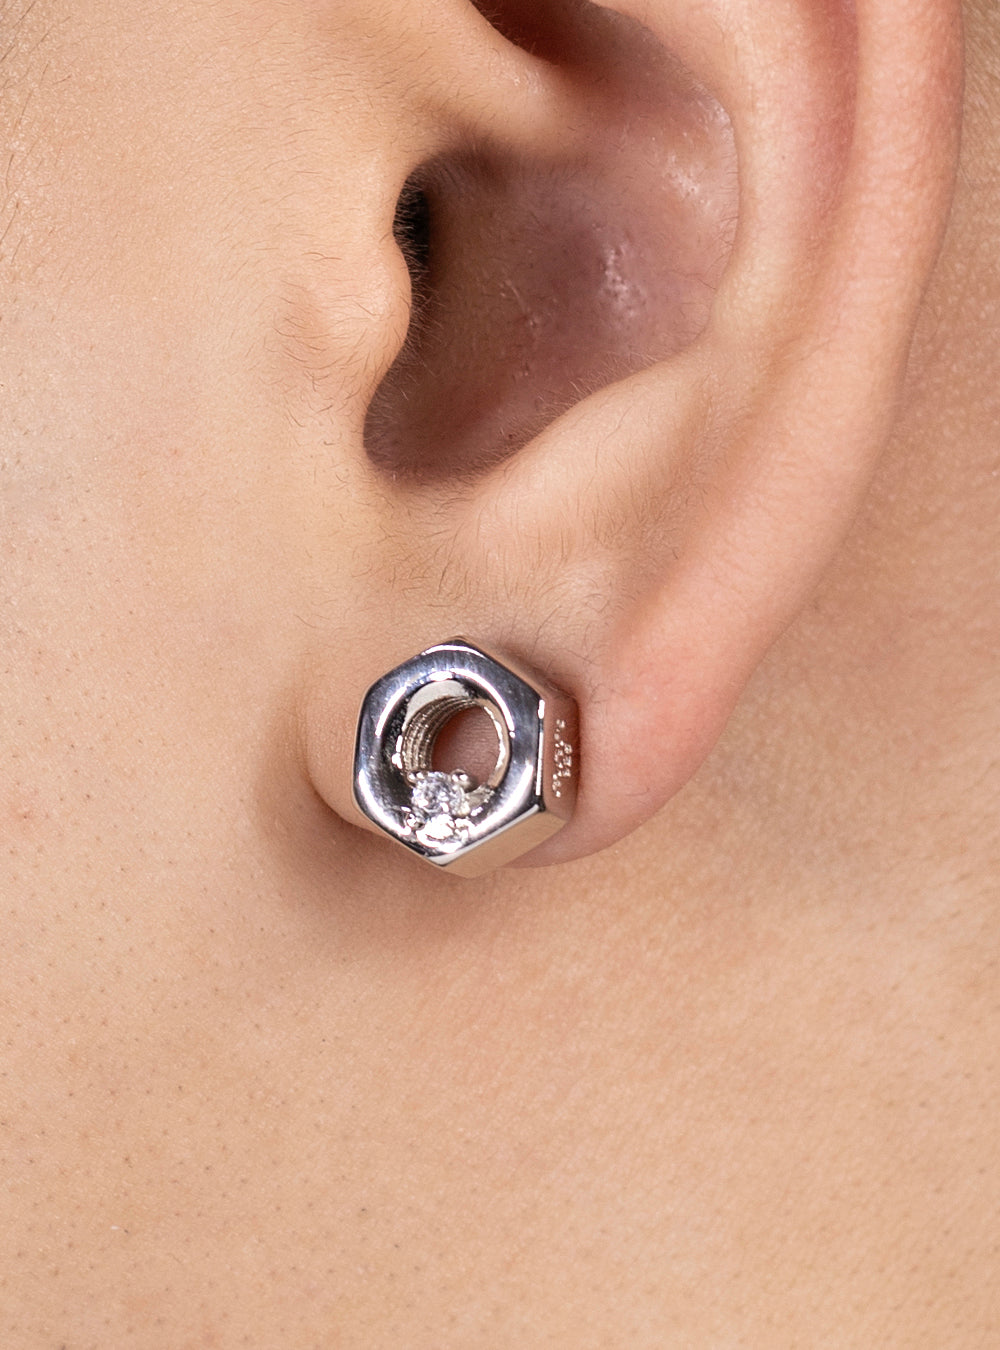 Hex-nut w/ cubic zirconia earrings